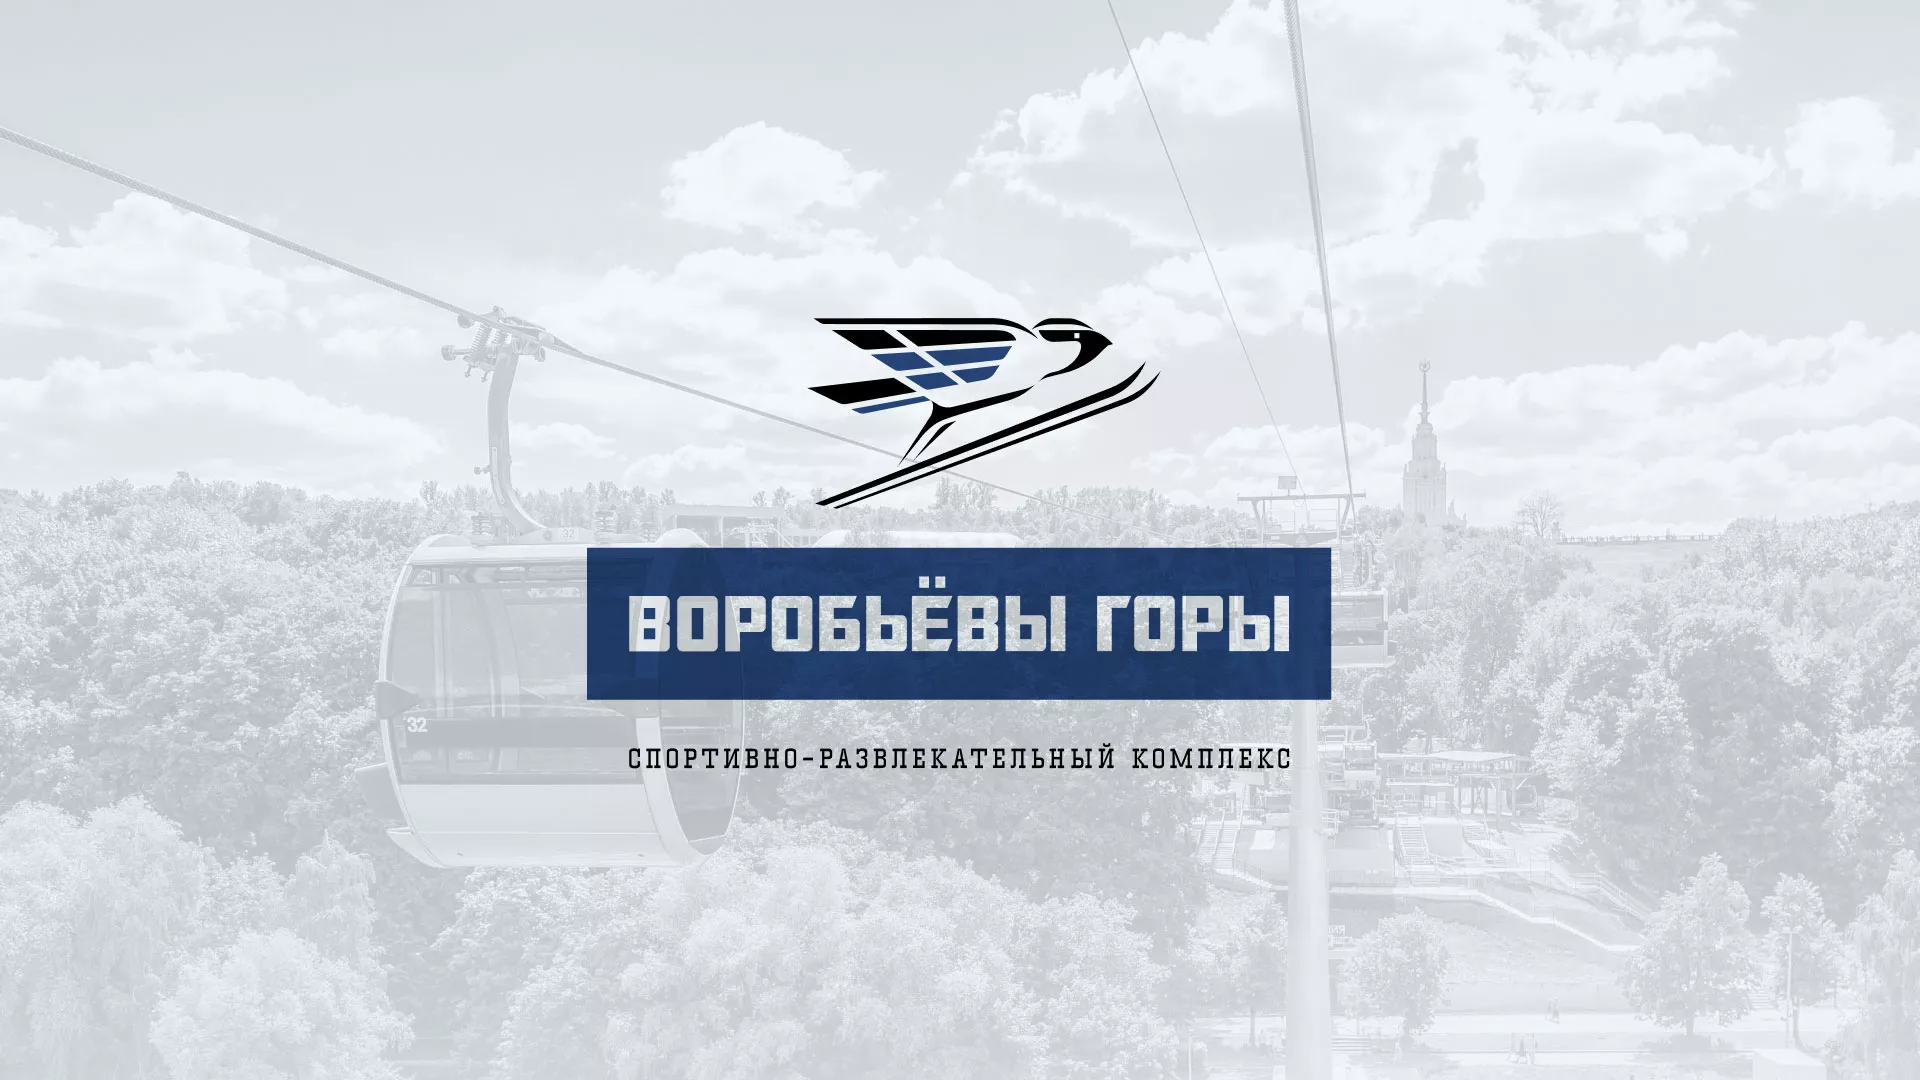 Разработка сайта в Каспийске для спортивно-развлекательного комплекса «Воробьёвы горы»